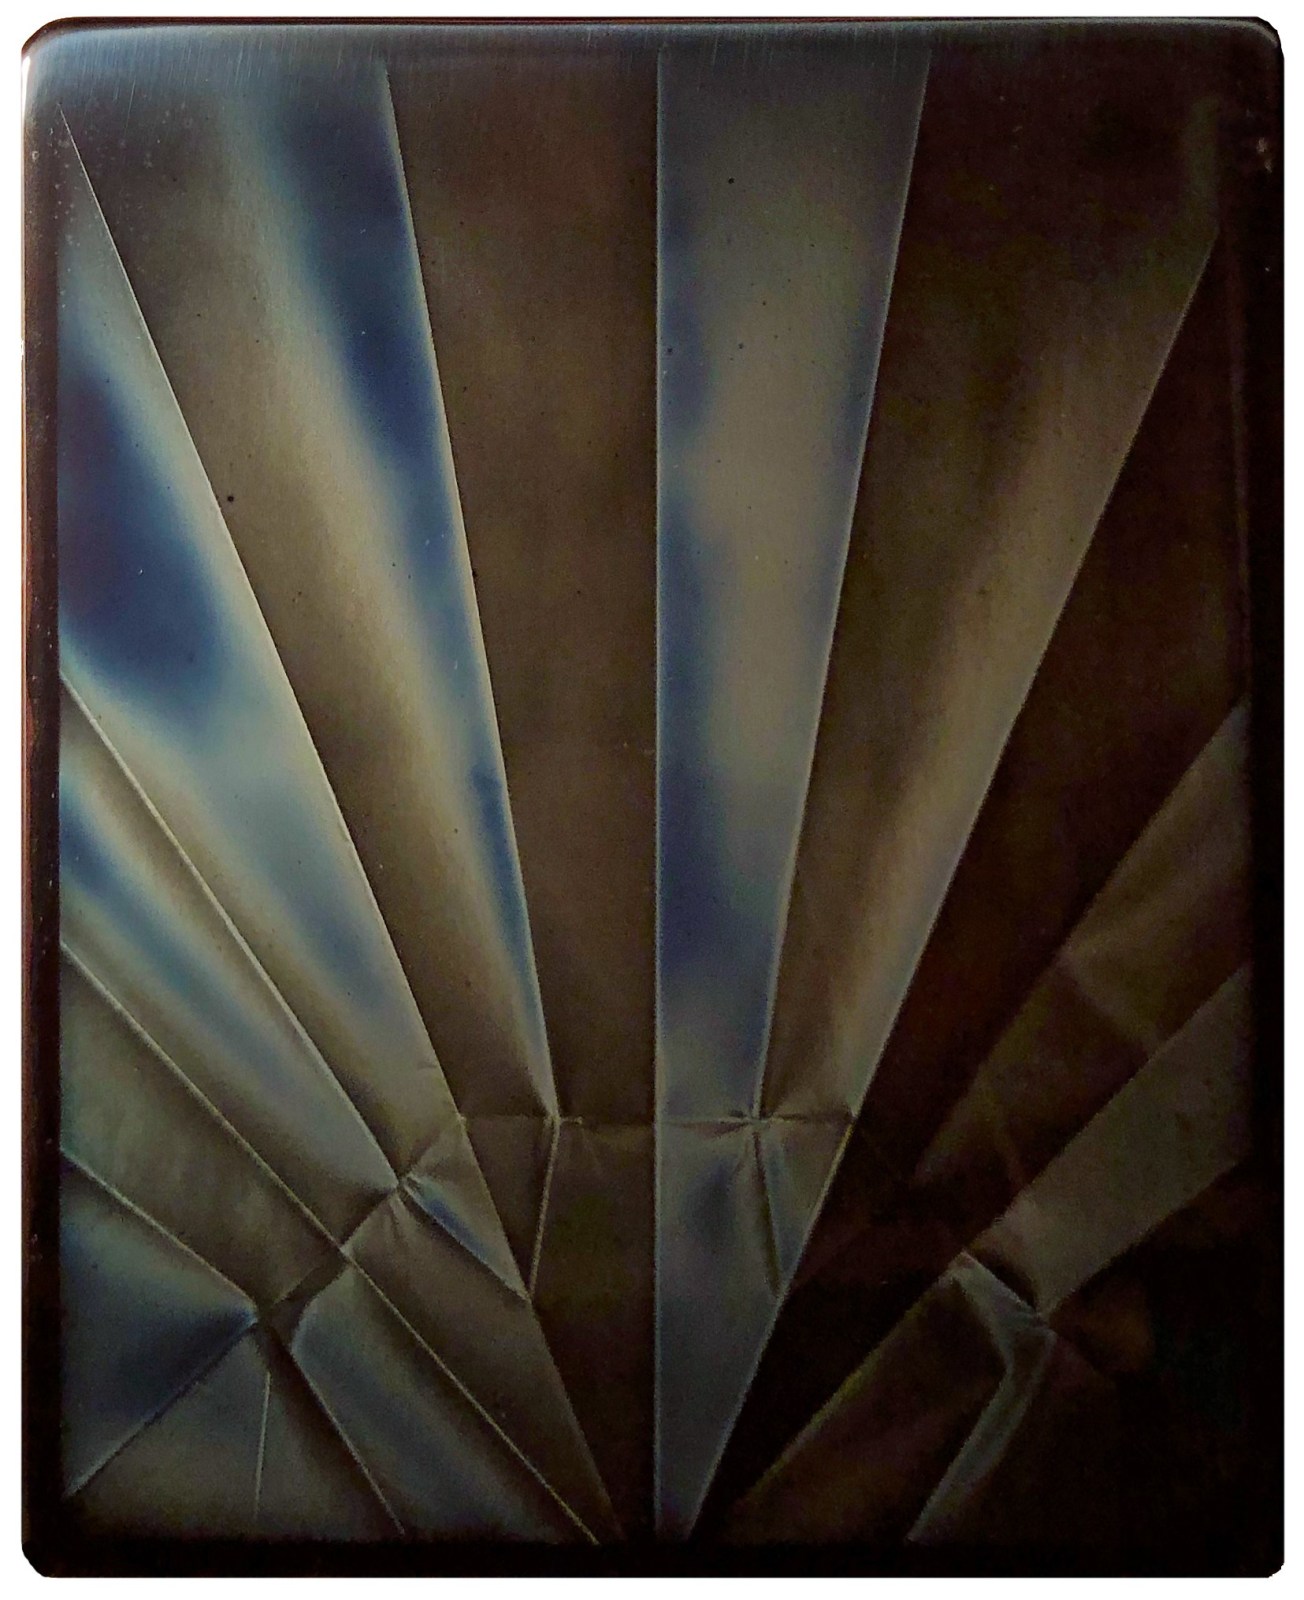 A solarized print with geometric folds